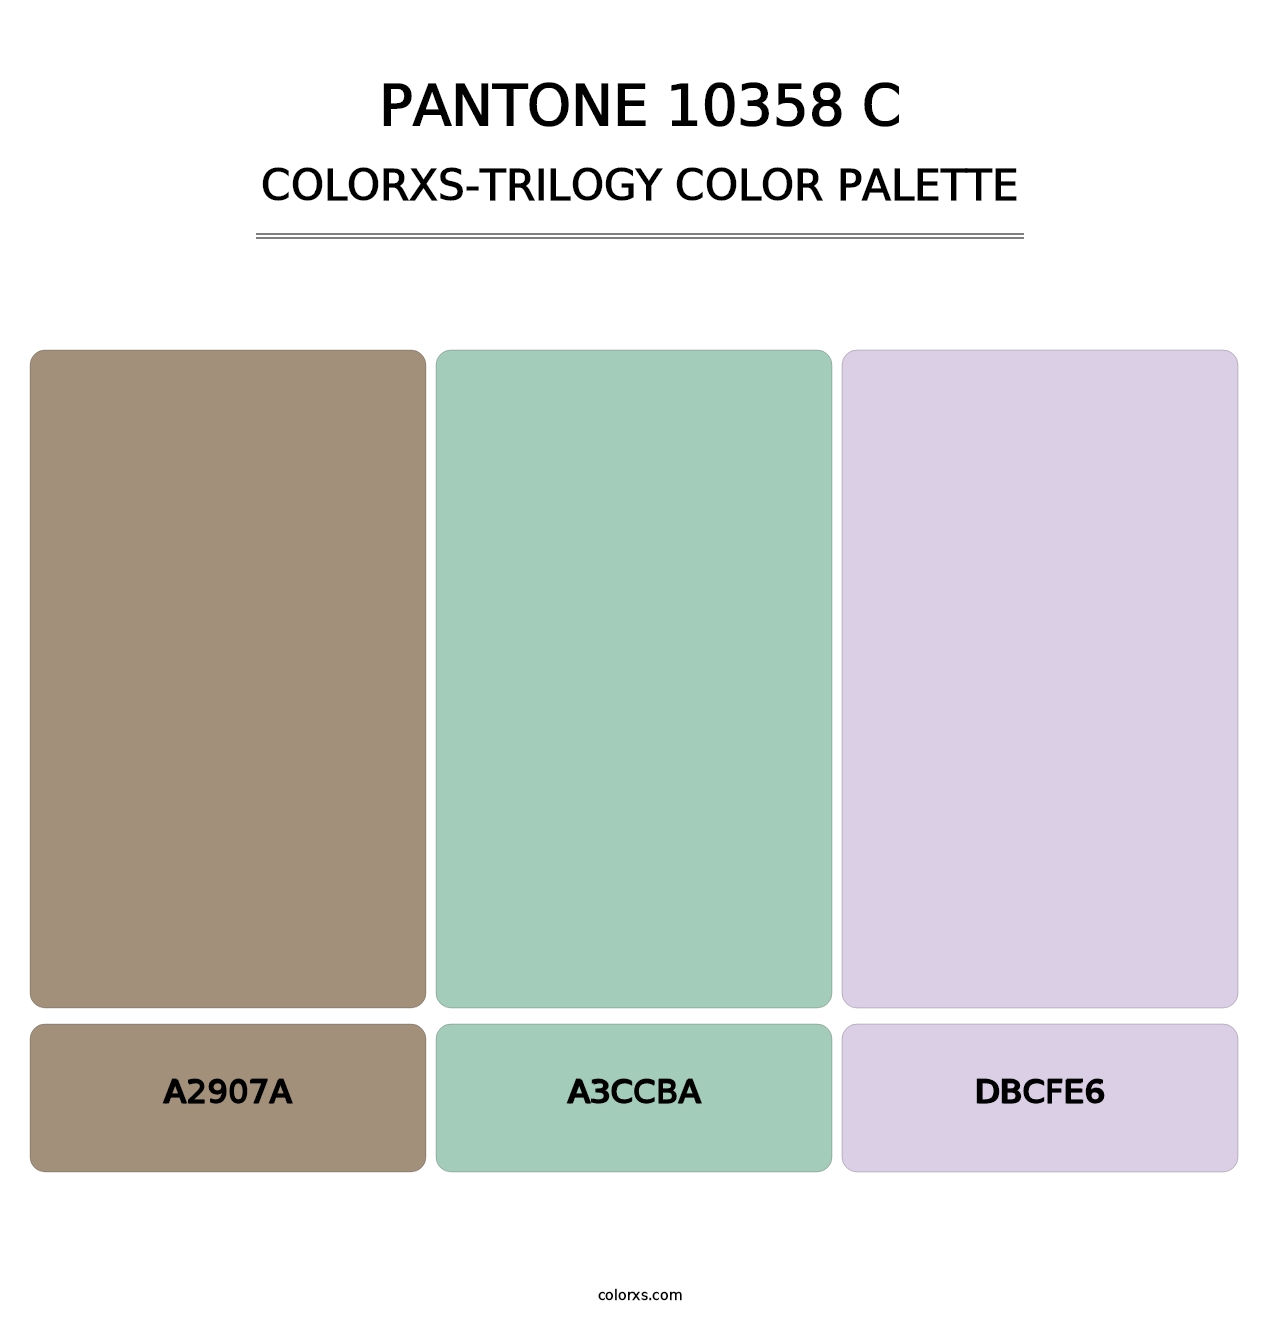 PANTONE 10358 C - Colorxs Trilogy Palette